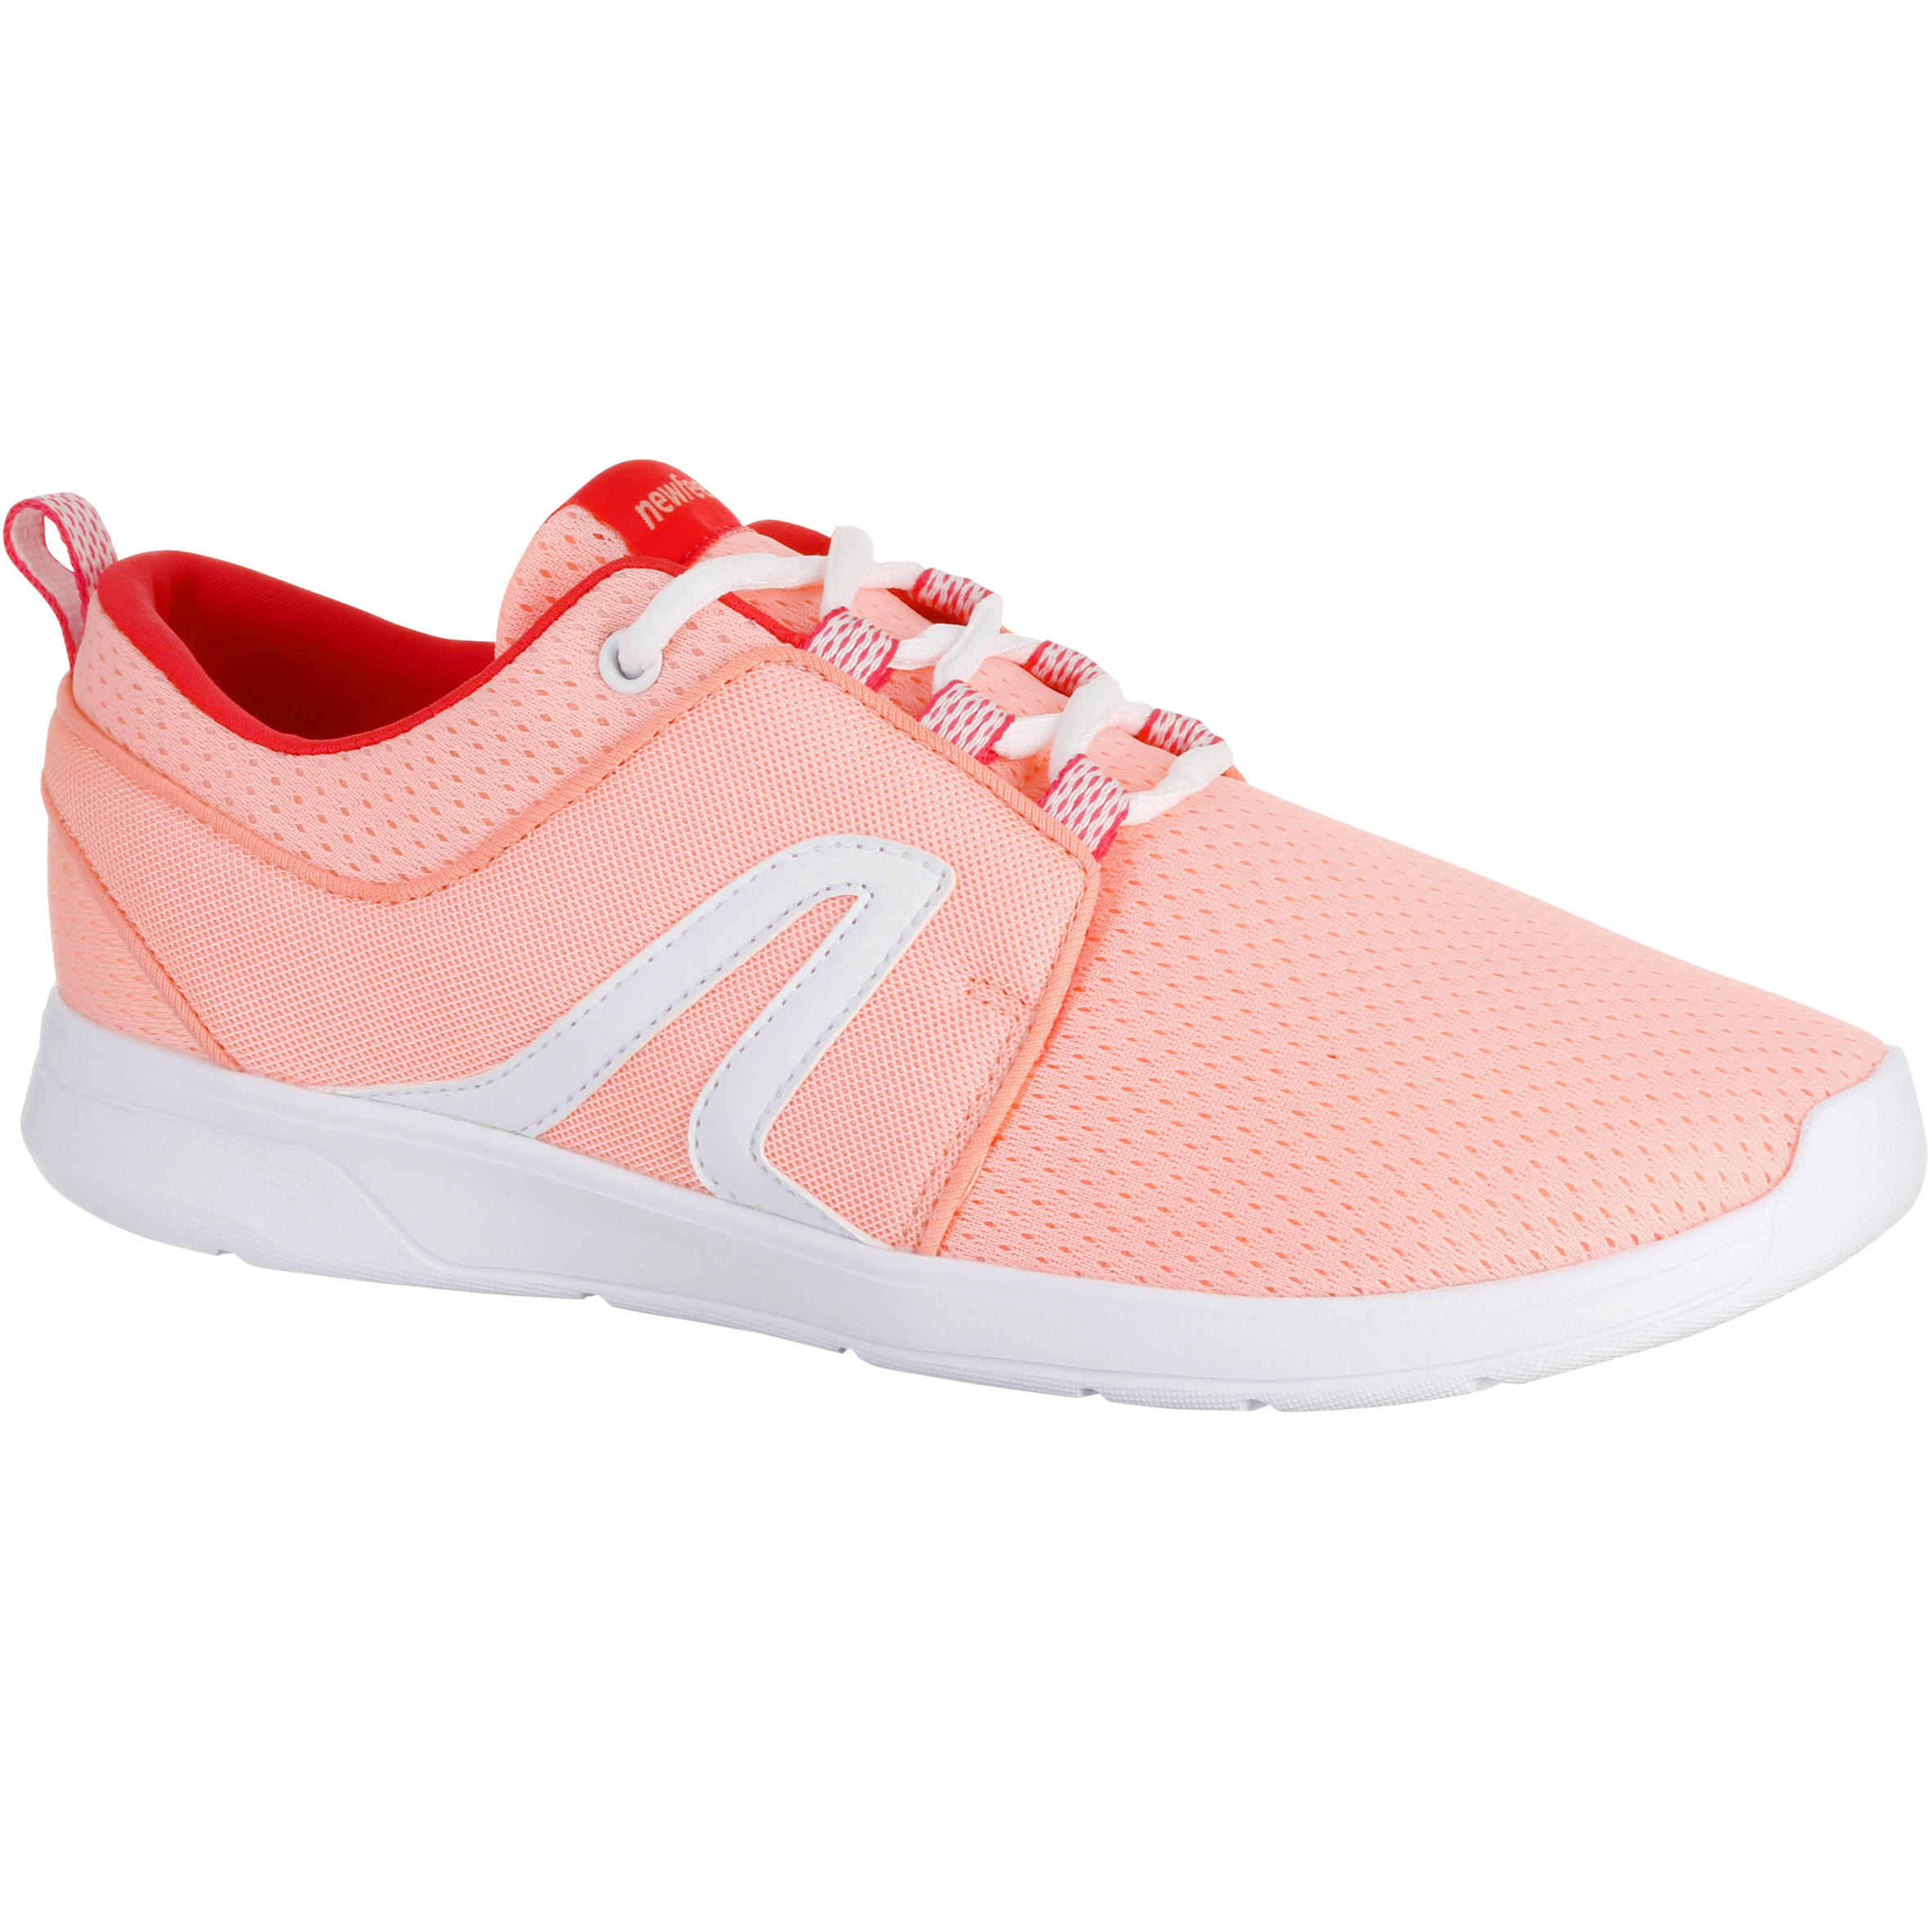 NEWFEEL Soft 140 Women's Fitness Walking Shoes - Pink